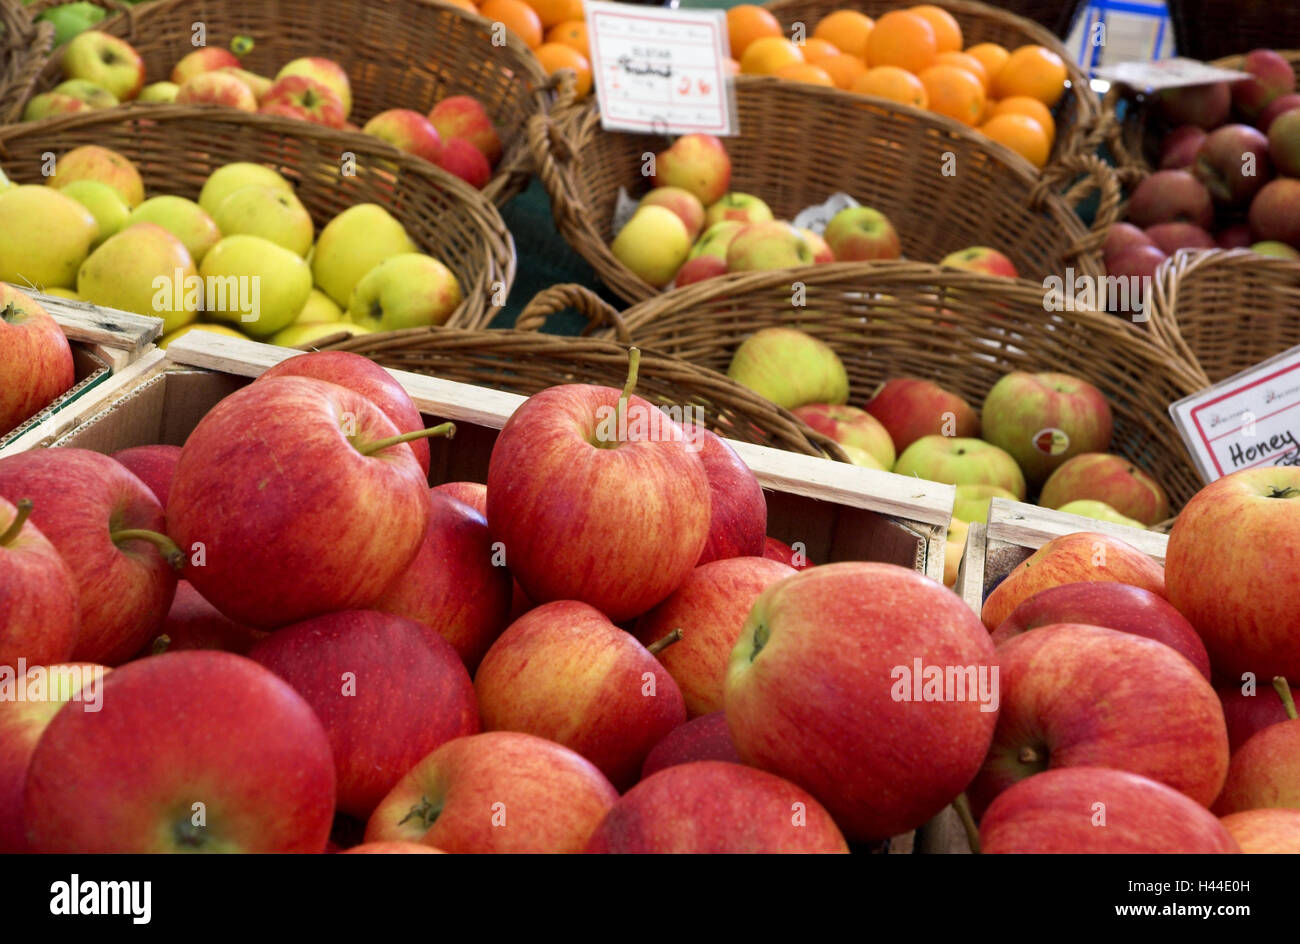 Äpfel, Markt, Stall, Obstkörbe, Obst, Apfelernte, Vertrieb, Viktualienmarkt, rot, München, vegetarisch, gesund, frisch, Obst, Stall, Obst-Vertrieb, Apfel-Sorten, verstorben, Preisschild, Früchte, Wochenmarkt, Verkaufsstand, Stockfoto